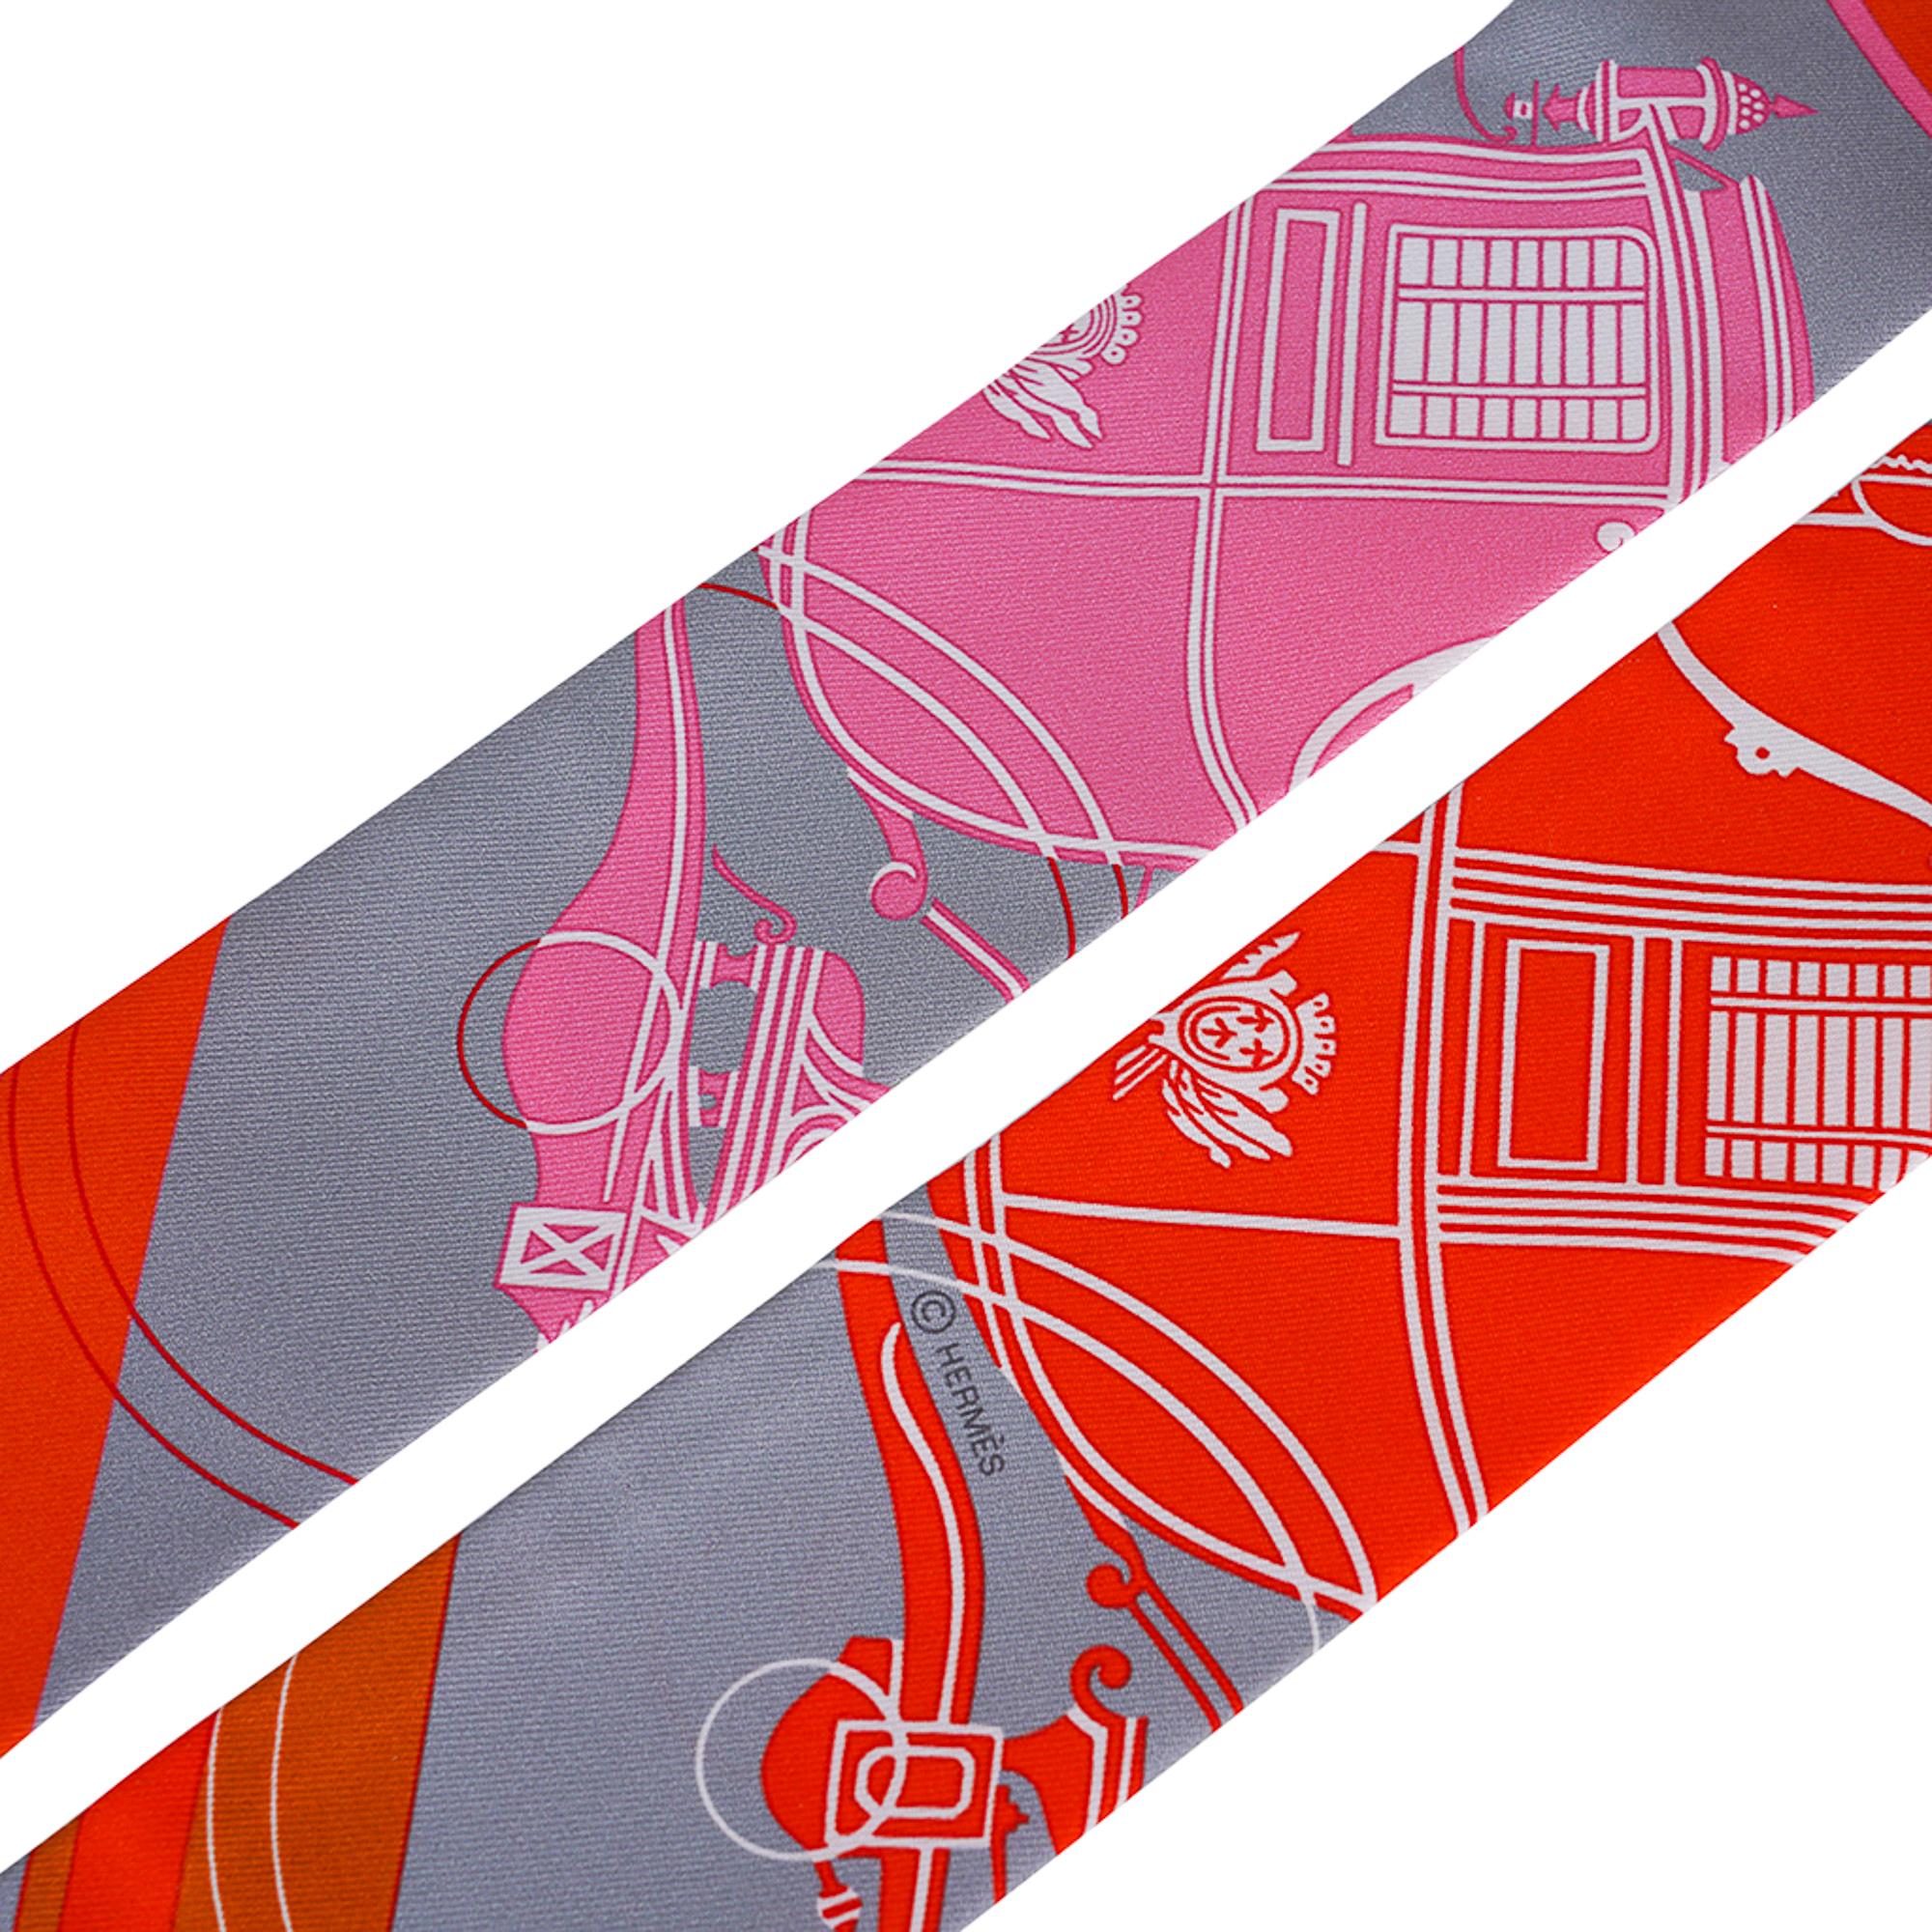 Mightychic propose un modèle Hermes Twilly Ex Libris décliné dans les coloris Gris, Orange et Rose.
L'emblème d'Hermès, Ex Libris, a été conçu par Hugo Grygkar.
Cet accessoire emblématique d'Icone peut être porté de multiples façons pour ajouter une